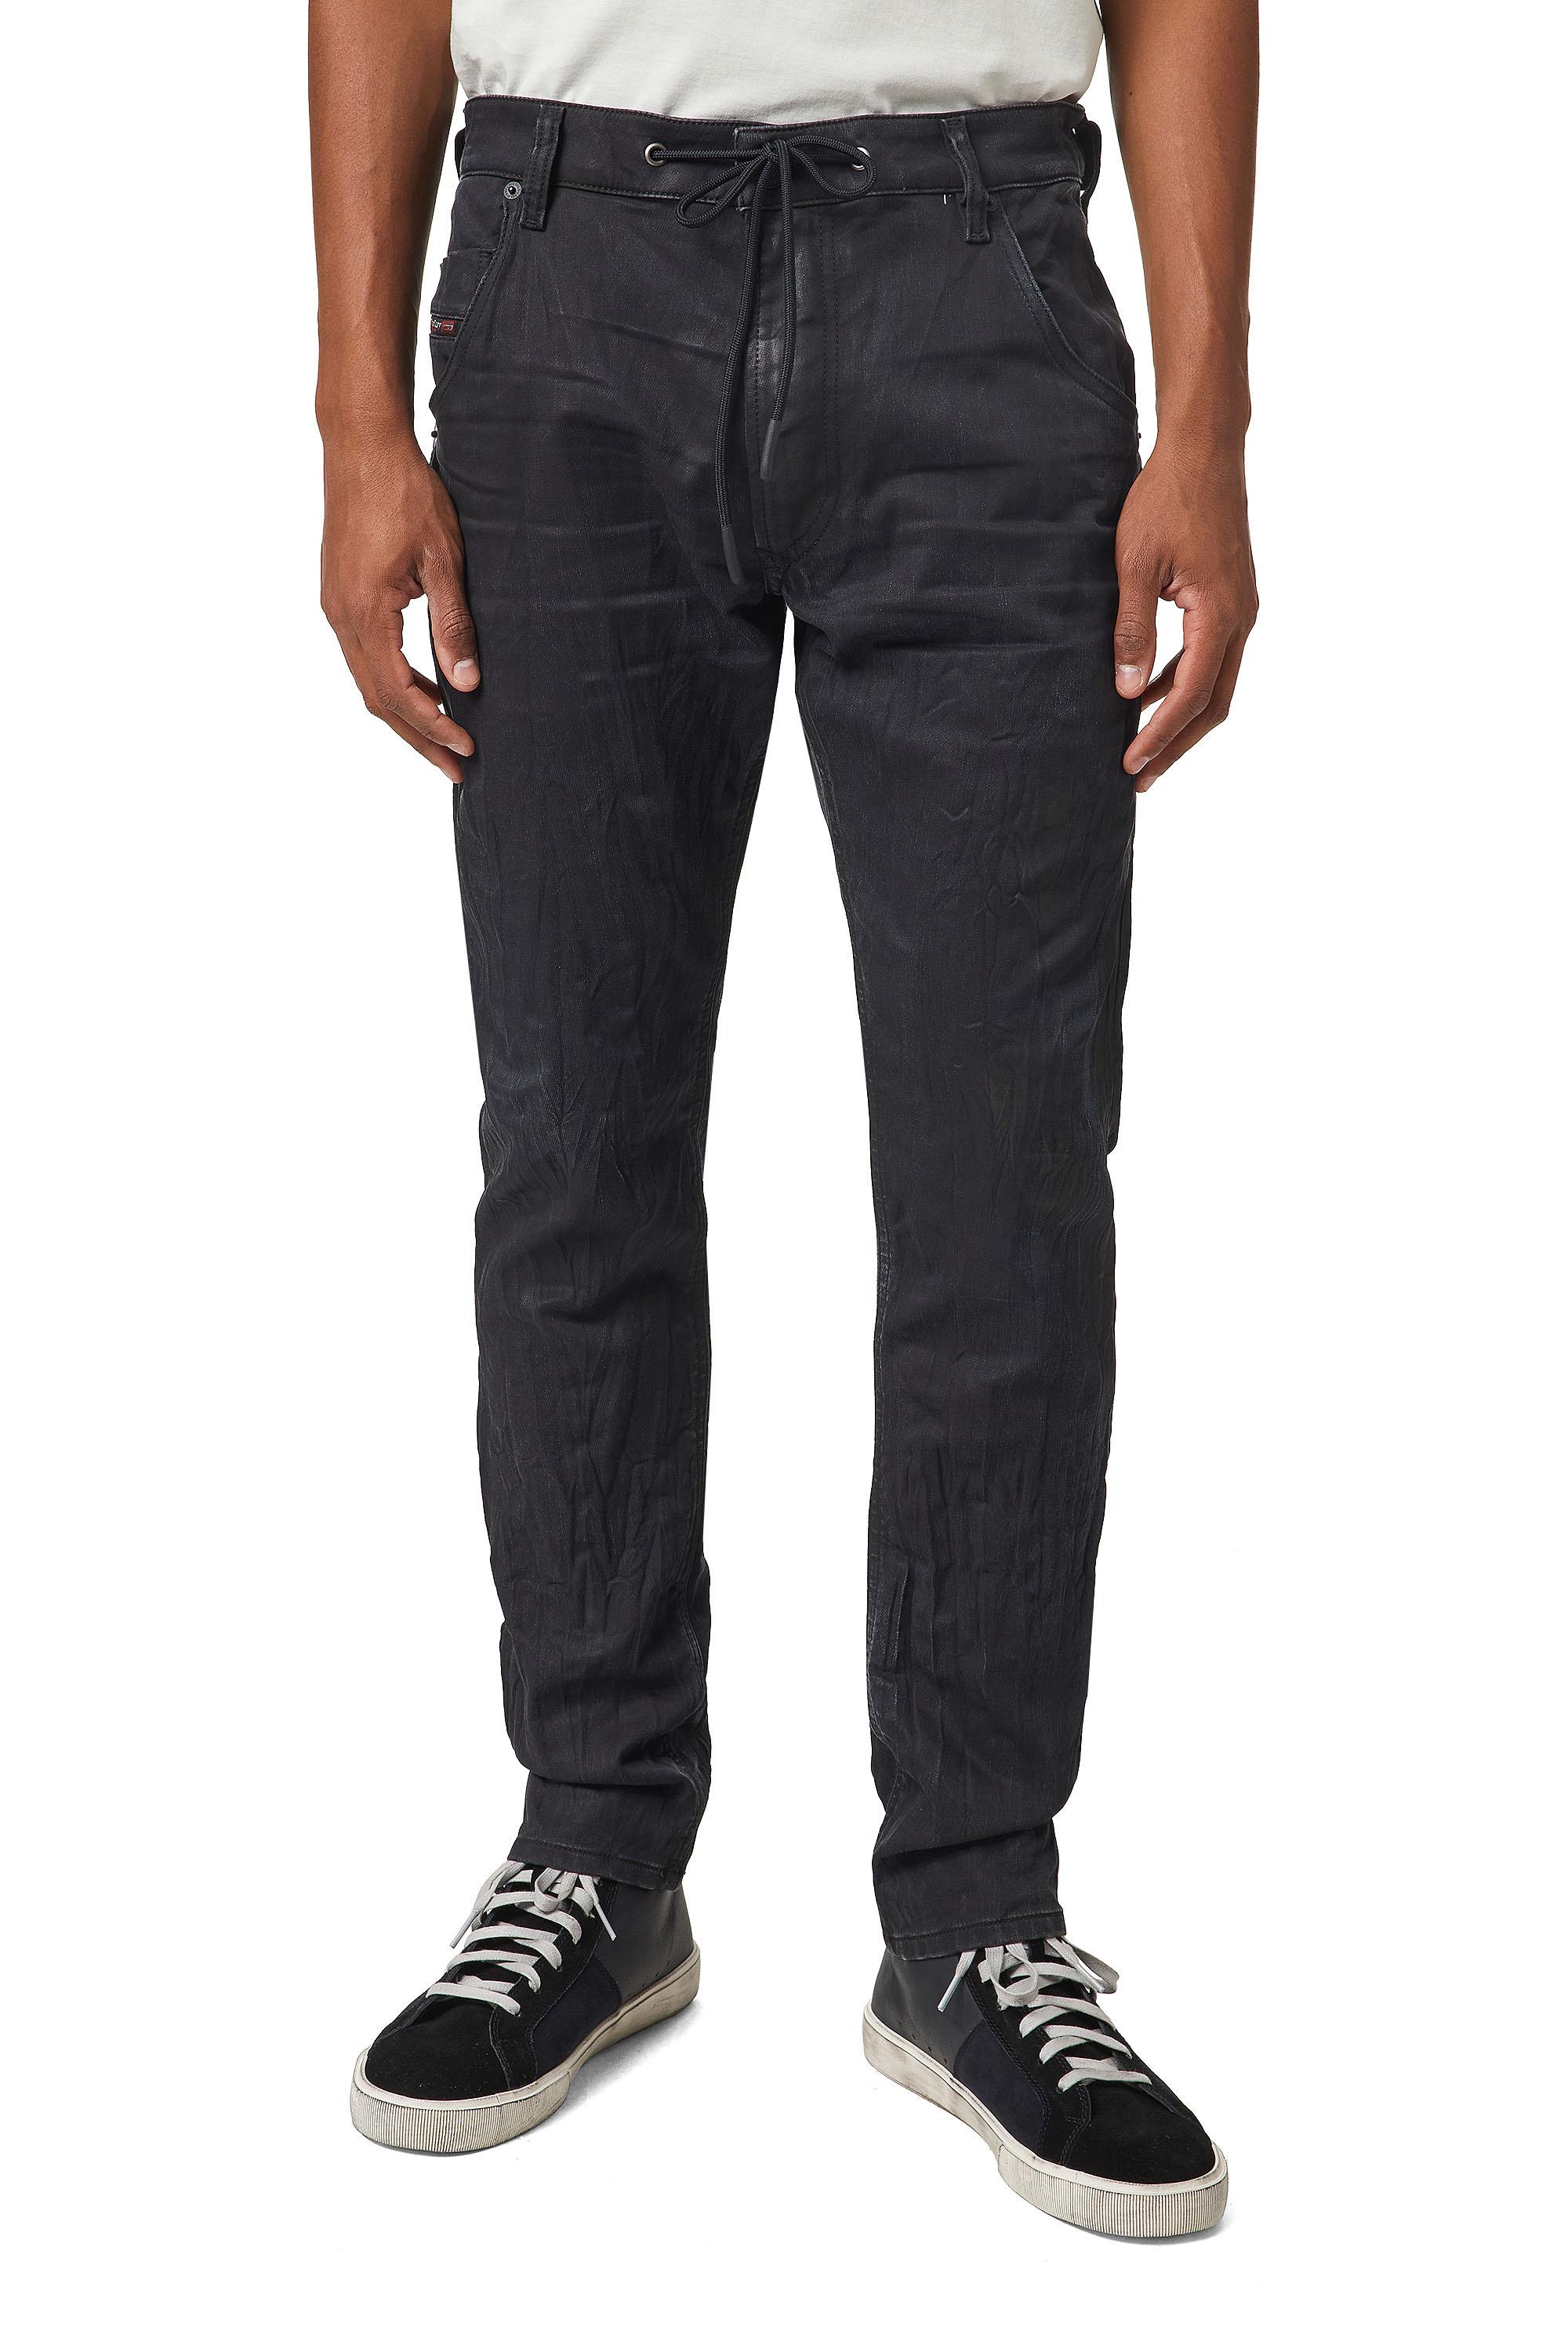 Diesel - Krooley Tapered JoggJeans® 069WB, Black/Dark grey - Image 3